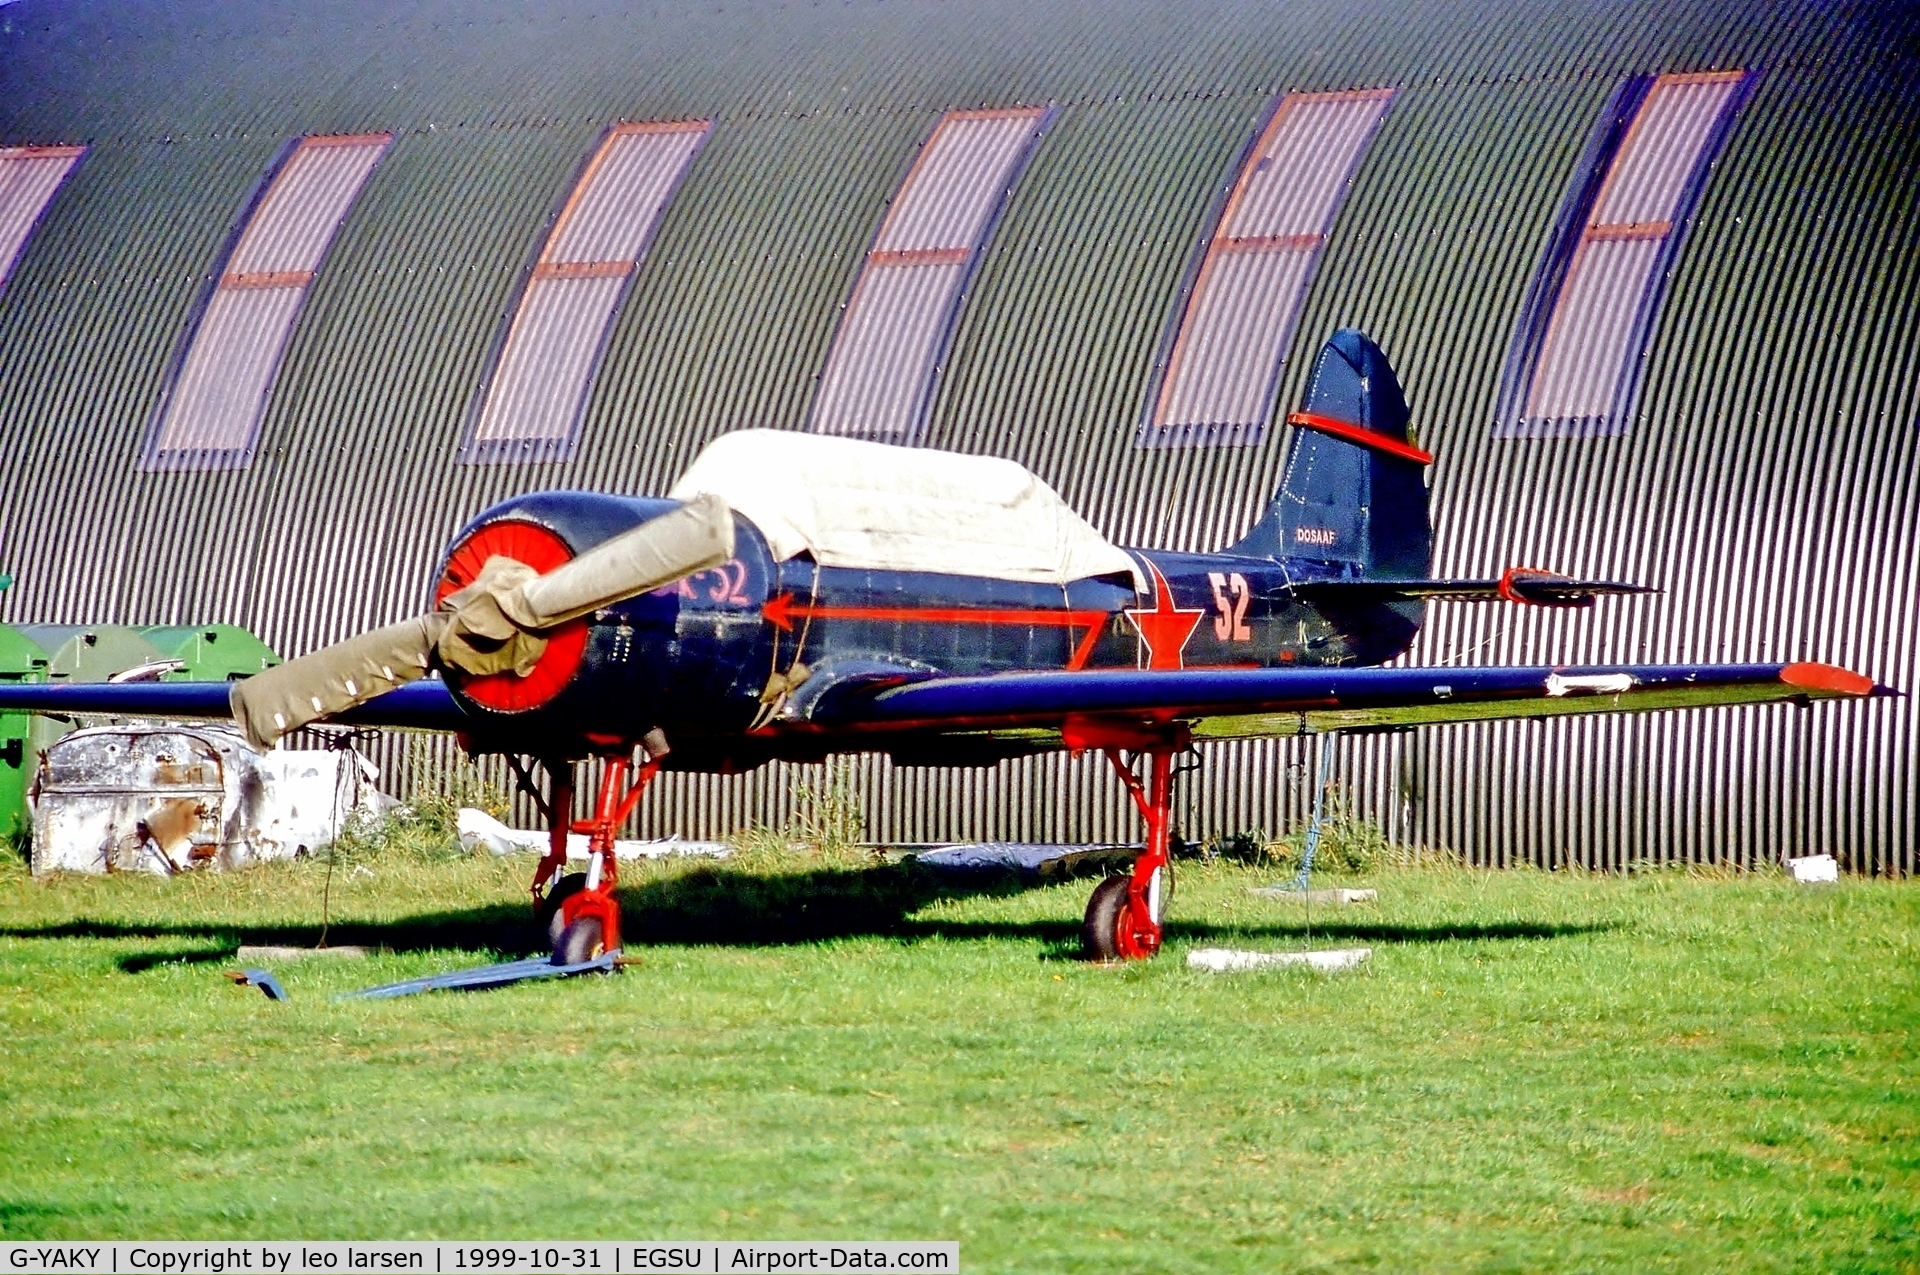 G-YAKY, 1984 Bacau Yak-52 C/N 844109, Duxford 31.10.99